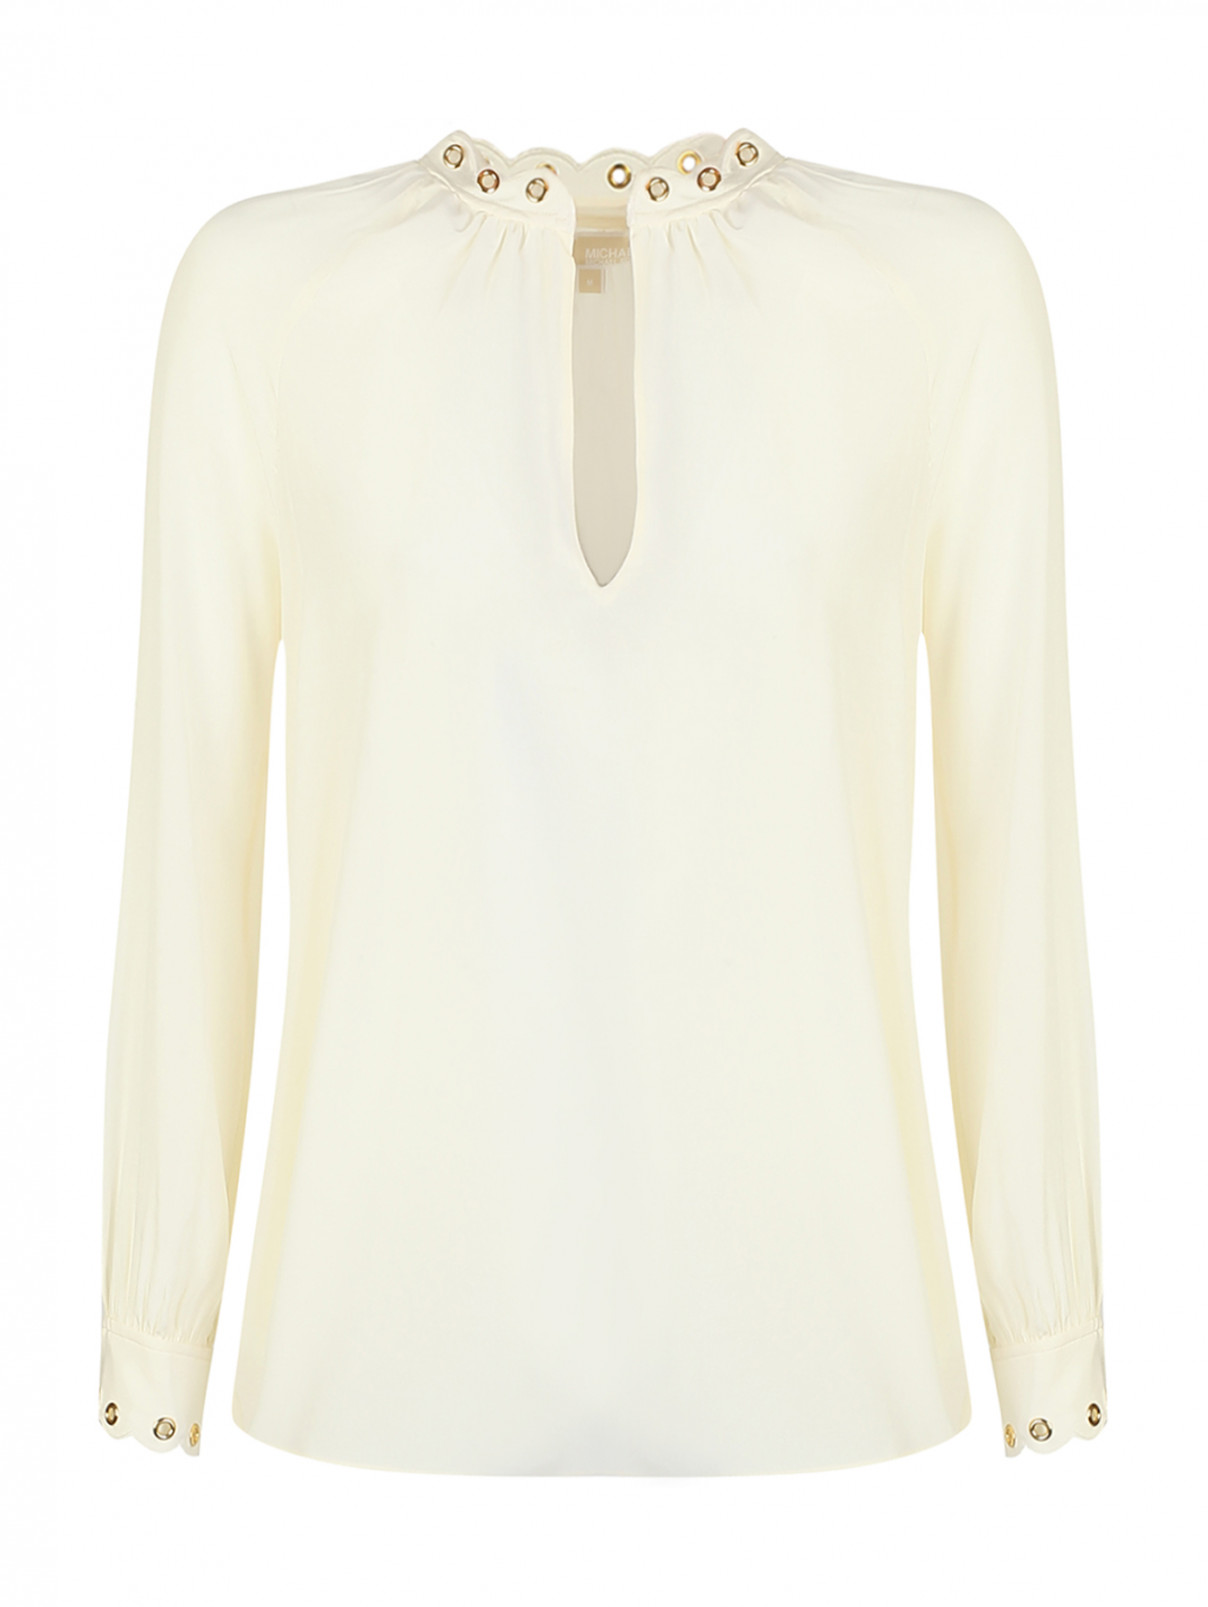 Блуза шелковая, декорированная люверсами Michael by Michael Kors  –  Общий вид  – Цвет:  Бежевый